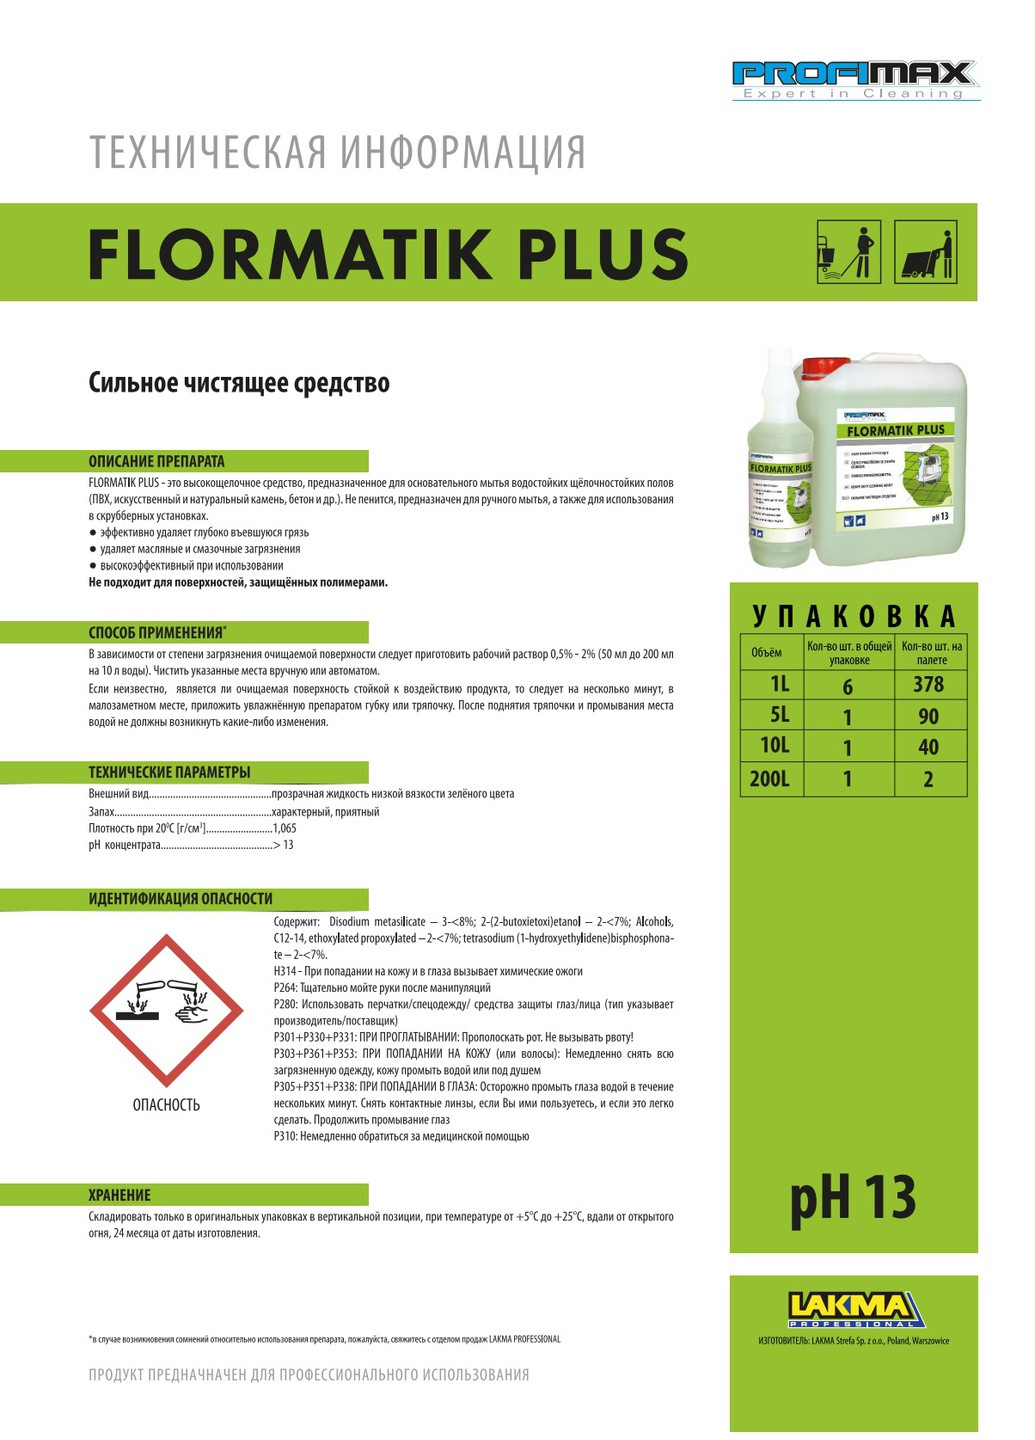 Профессиональное средство для мойки стен с сильными загрязнениями PROFIMAX FLORMATIK PLUS 10л (3091) Lakma (269696476)